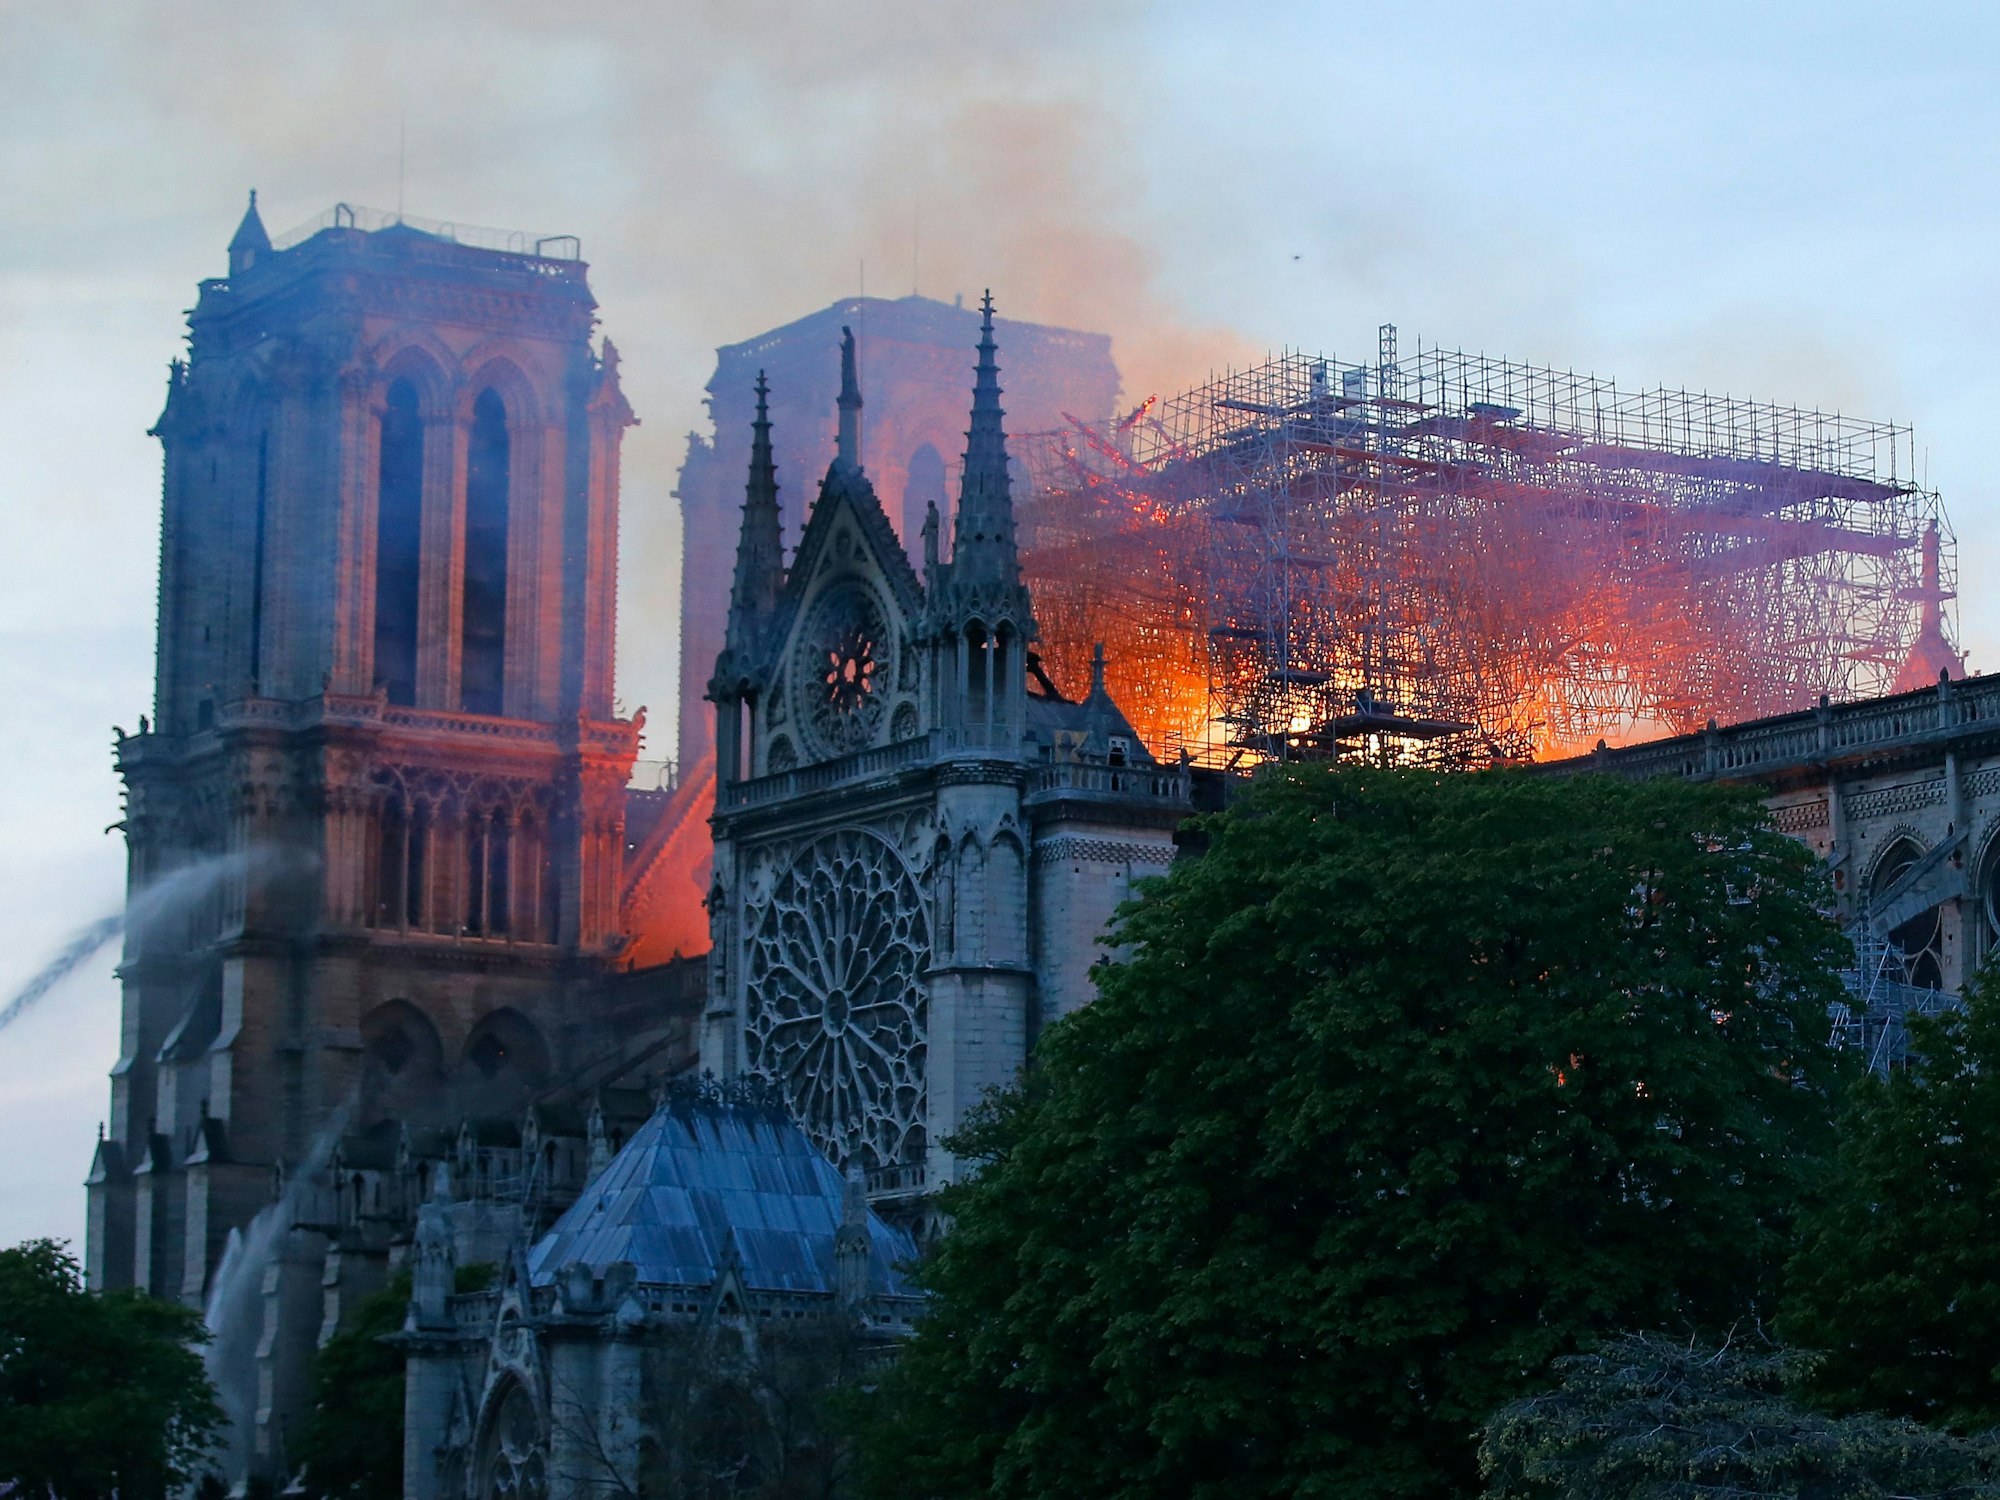 Das Foto vom 15. April 2019 zeigt die Pariser Kathedrale Notre-Dame, die in Flammen steht. Über ihr zieht Rauch hinweg.